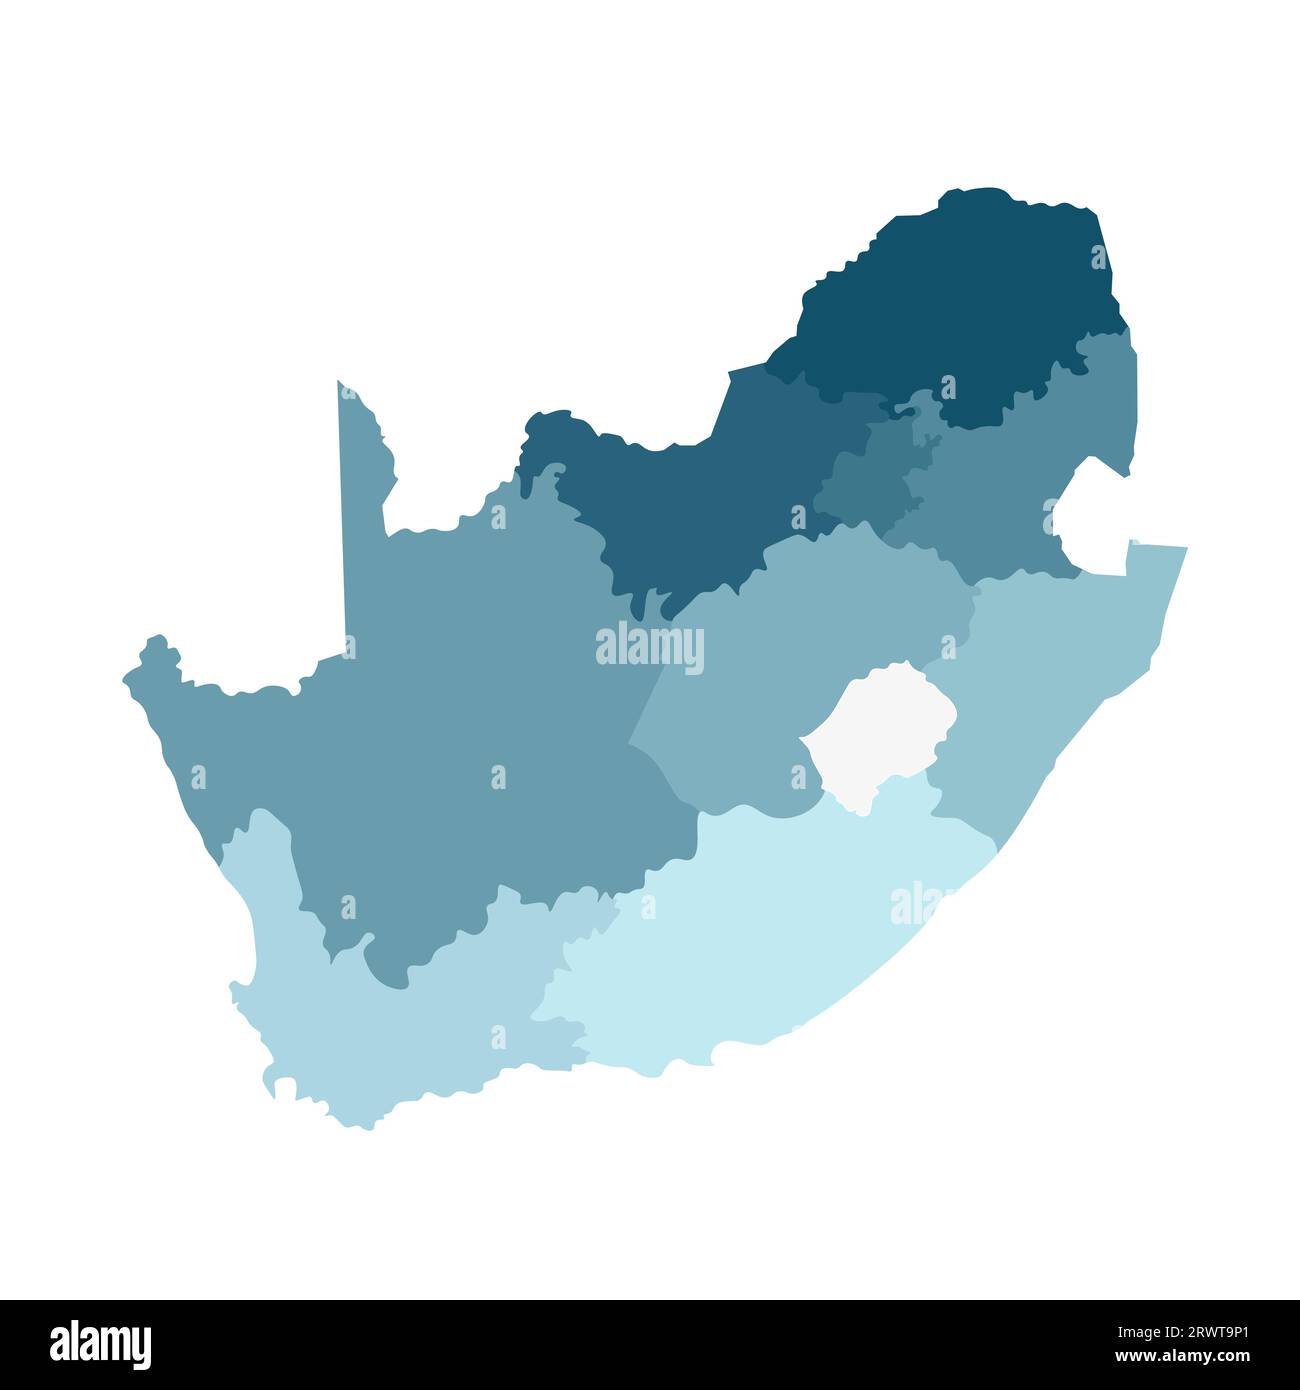 Illustrazione vettoriale isolata della mappa amministrativa semplificata del Sudafrica. Confini delle regioni. Sagome kaki blu colorato. Illustrazione Vettoriale